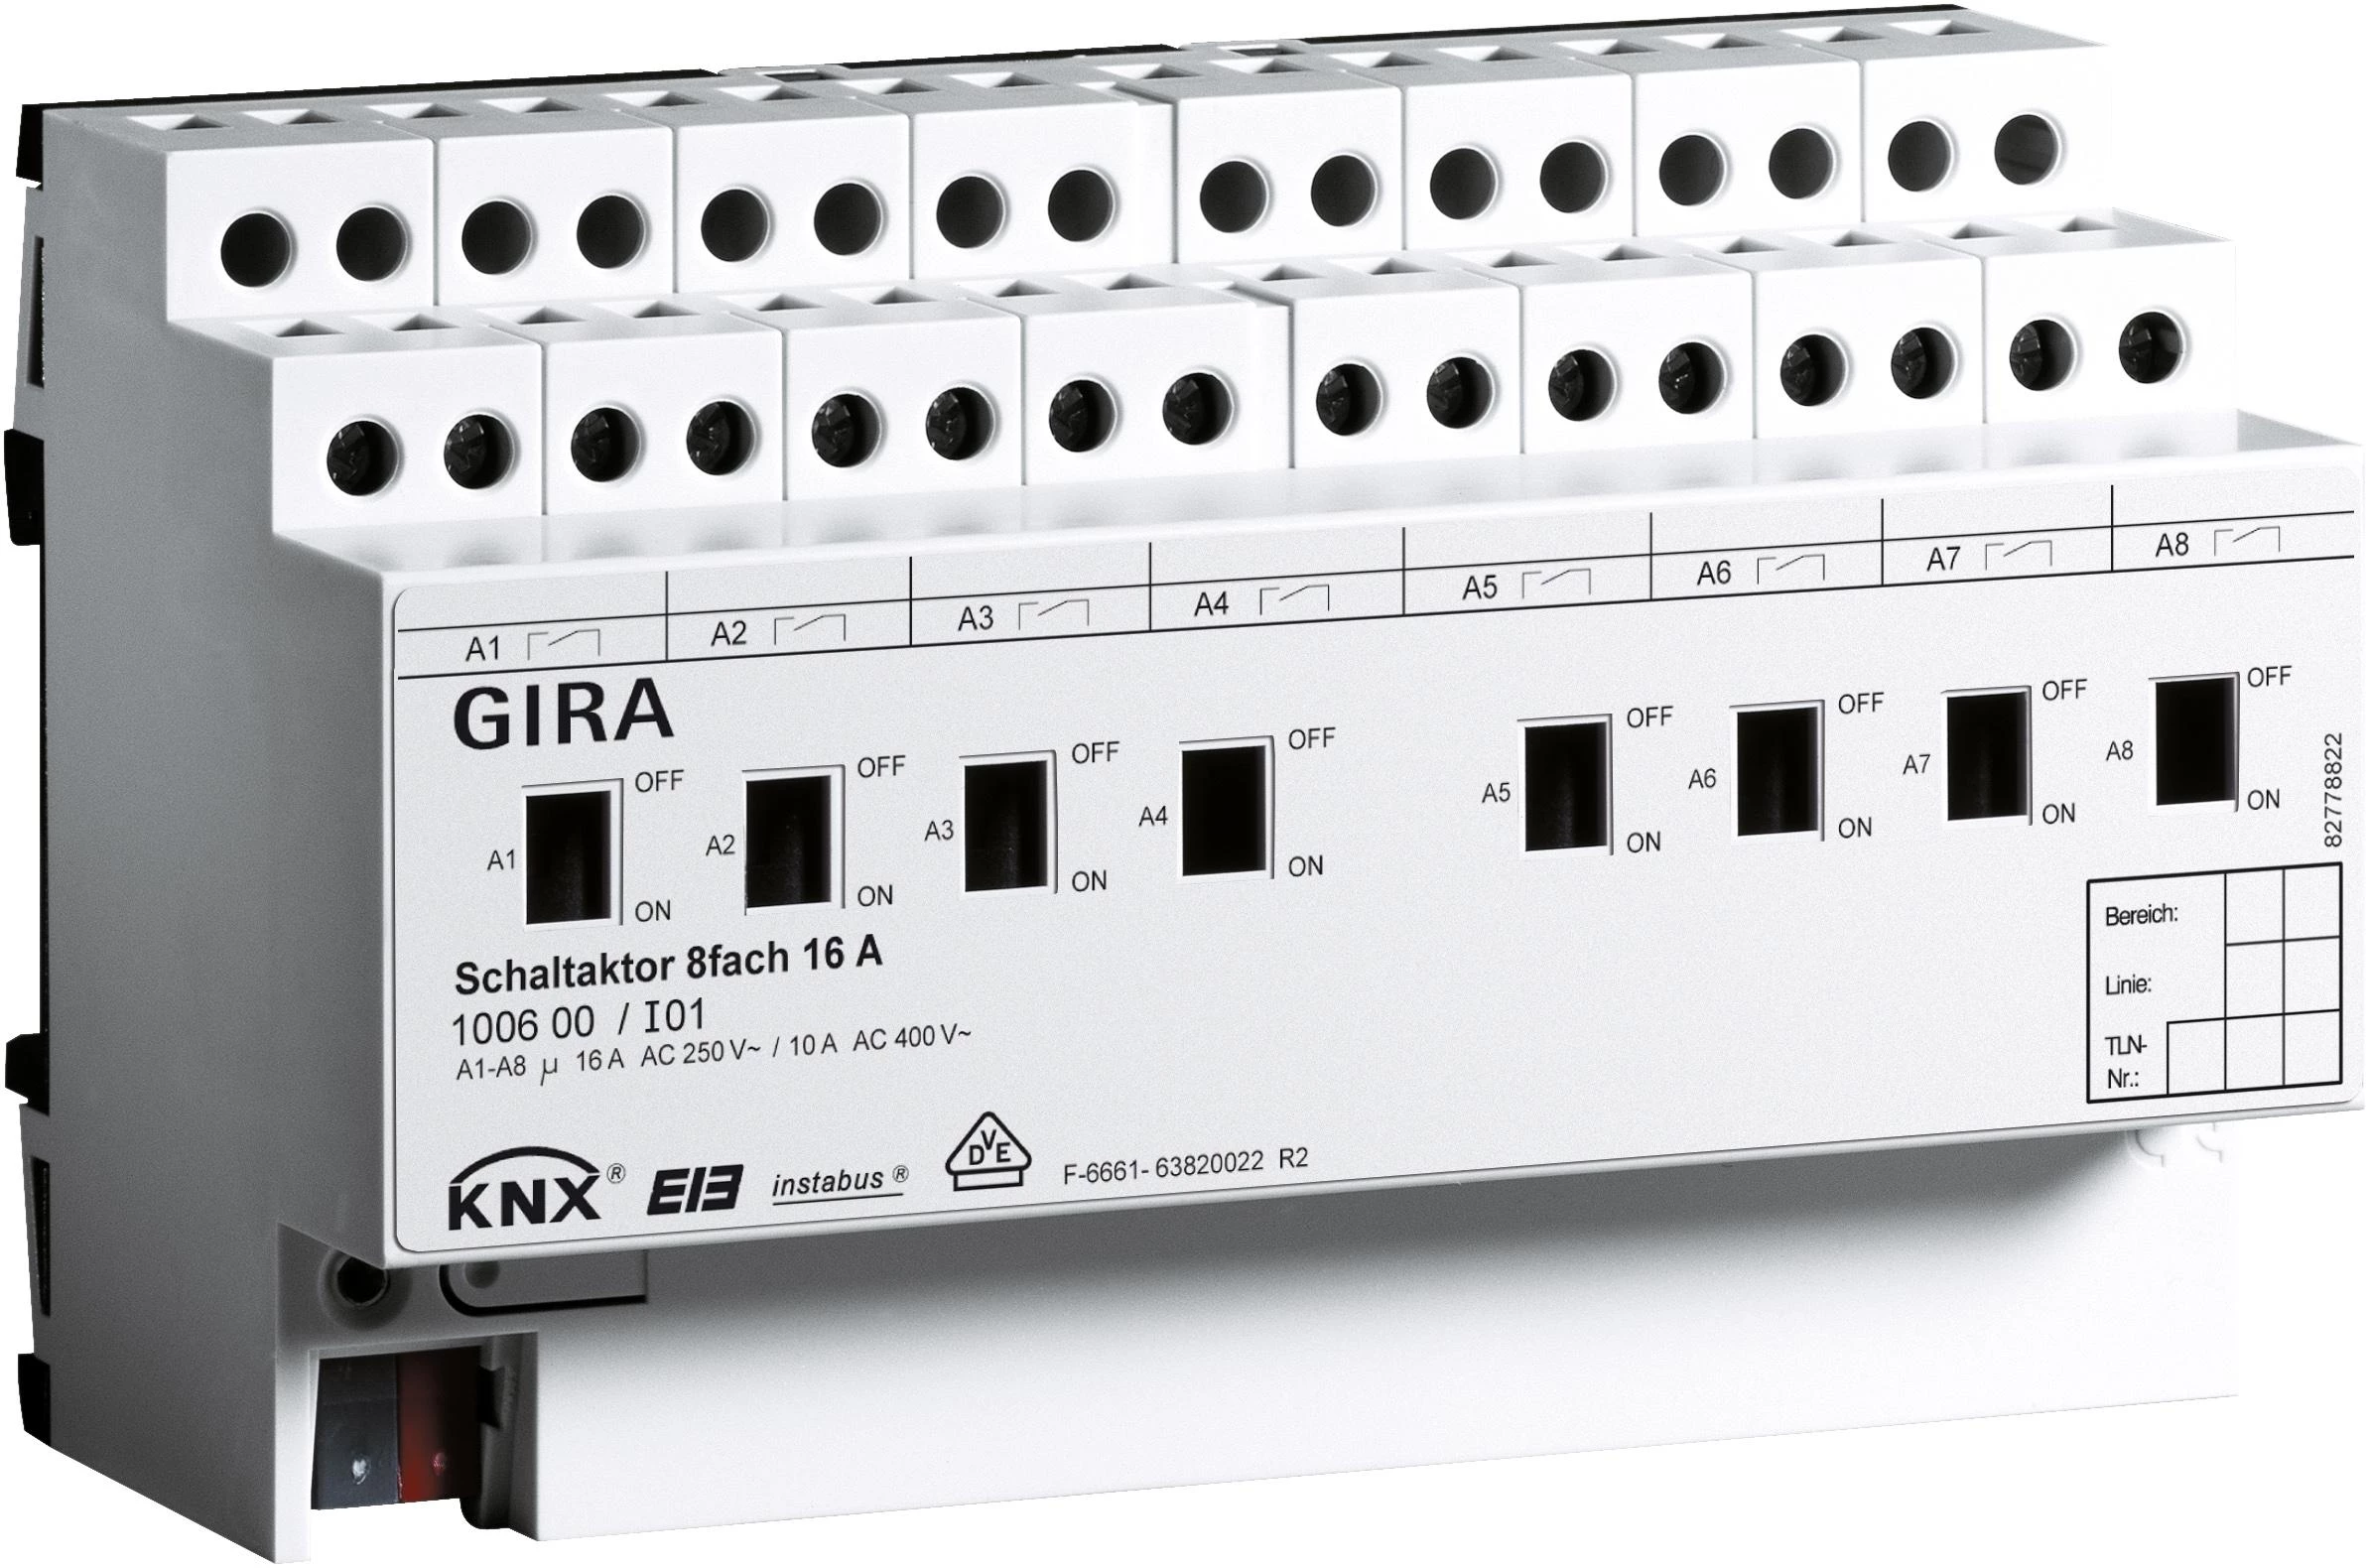  артикул 100600 название Gira Instabus KNX/EIB Исполнительное устройство 8-канальное, с ручным управлением